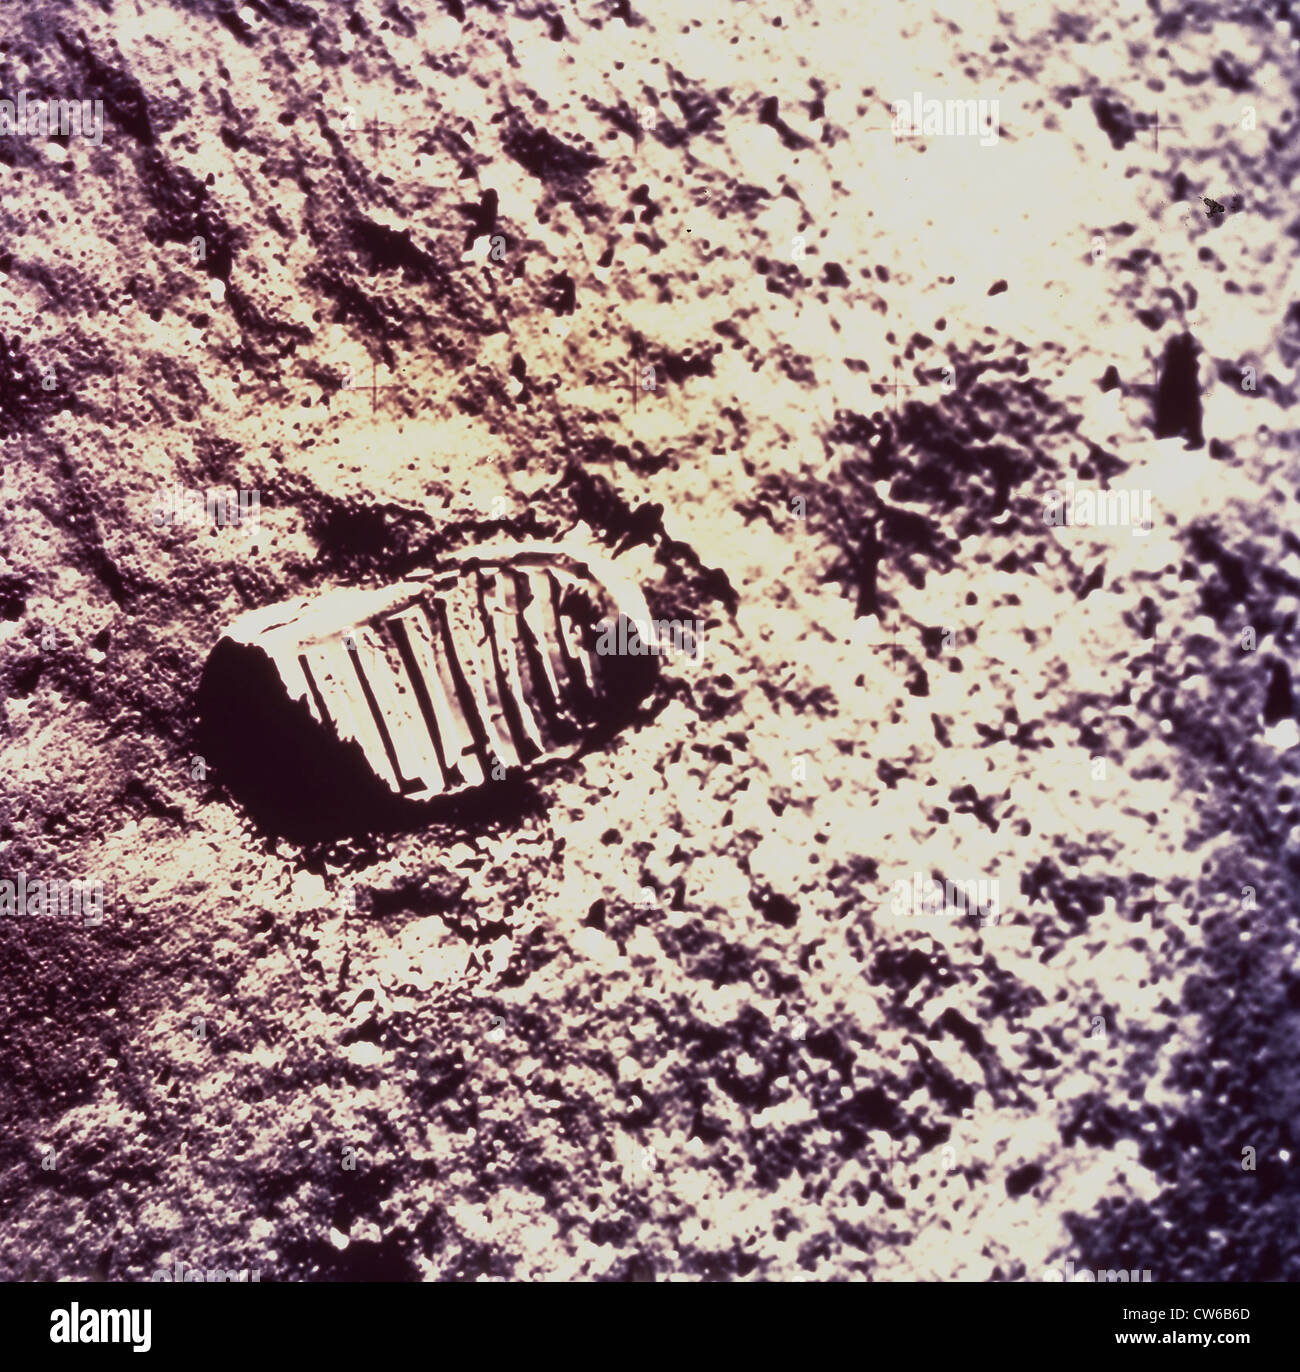 Ansicht der Astronaut Fußabdruck im Boden Mond (Apollo XI Mission) 20. / 21. Juli 1969 Stockfoto